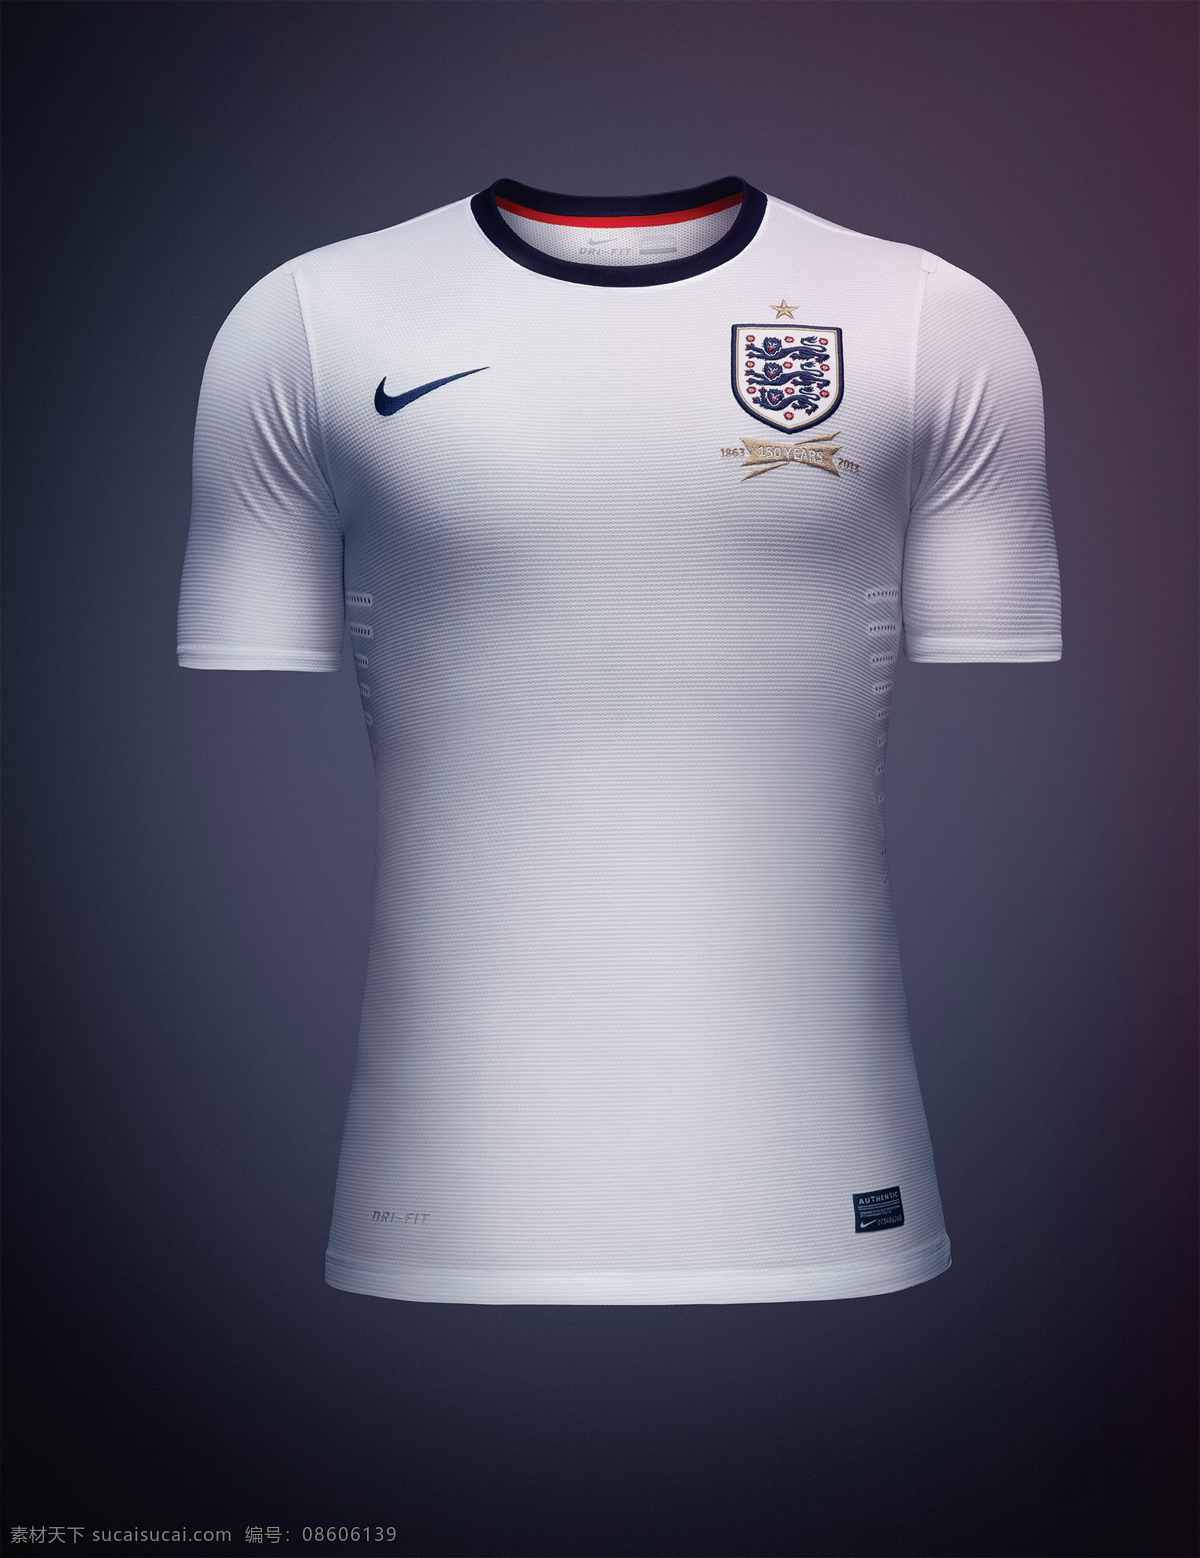 英格兰队服 nike 英格兰 国家队 队服 宣传 广告 体育用品 生活百科